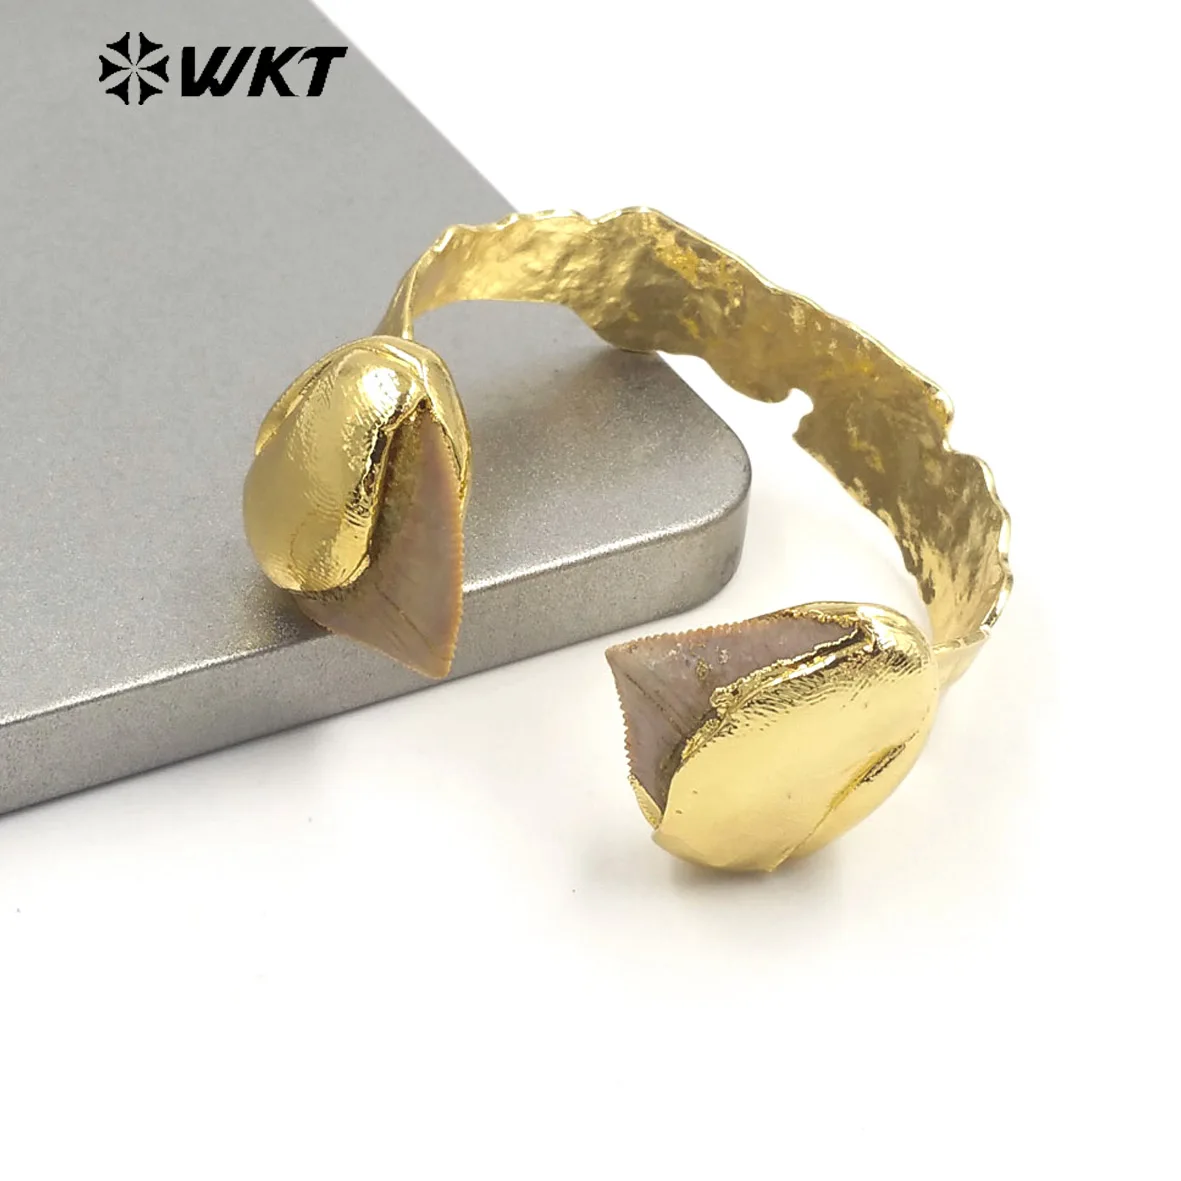 WT-B635 Удивительный WKT Эксклюзивный образец зубного браслета 18k с покрытием из настоящего золота INS, женский браслет в модном стиле, регулируемый Изображение 3